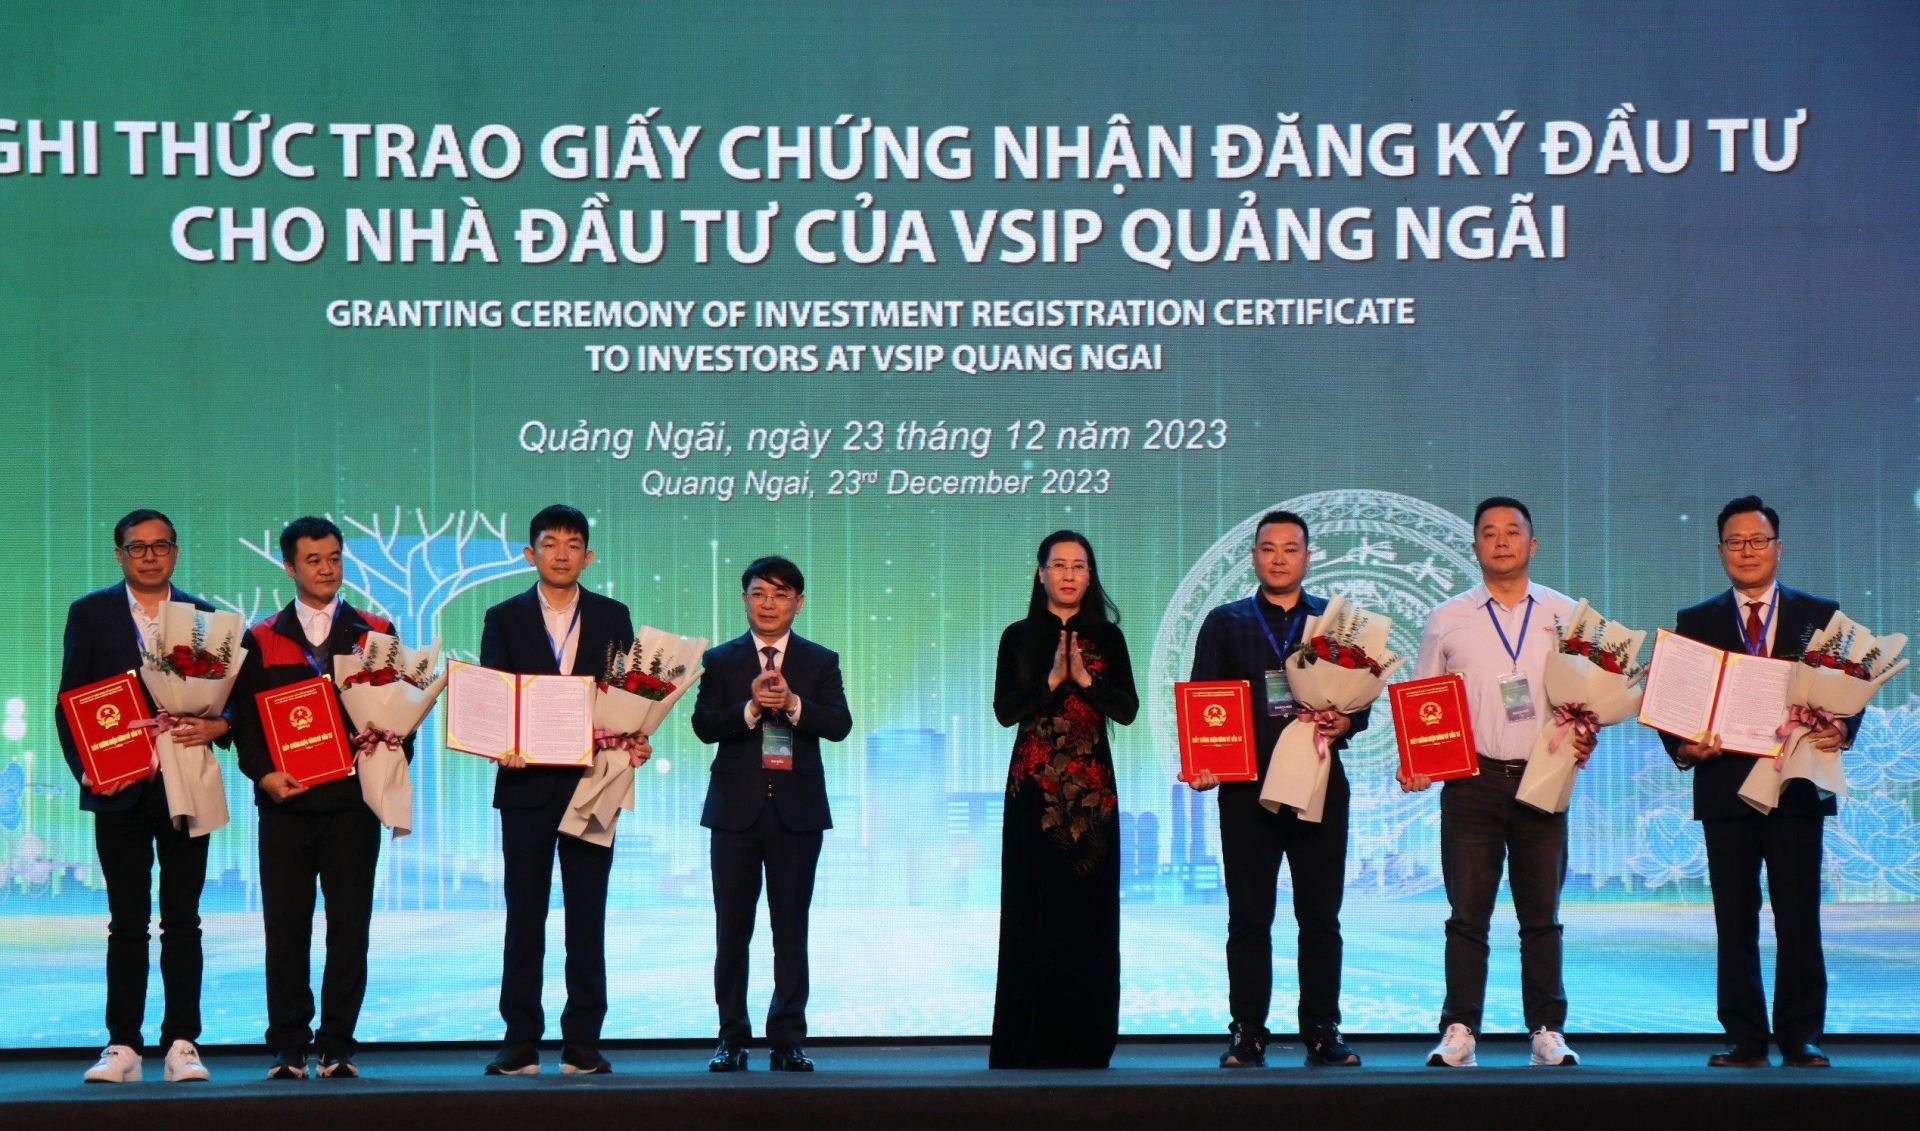 Tại buổi lễ, tỉnh Quảng Ngãi đã trao Giấy chứng nhận đăng ký đầu tư cho 4 dự án cấp mới vào Khu công nghiệp VSIP Quảng Ngãi trong năm 2023 với tổng vốn đăng ký khoảng 69,3 triệu USD